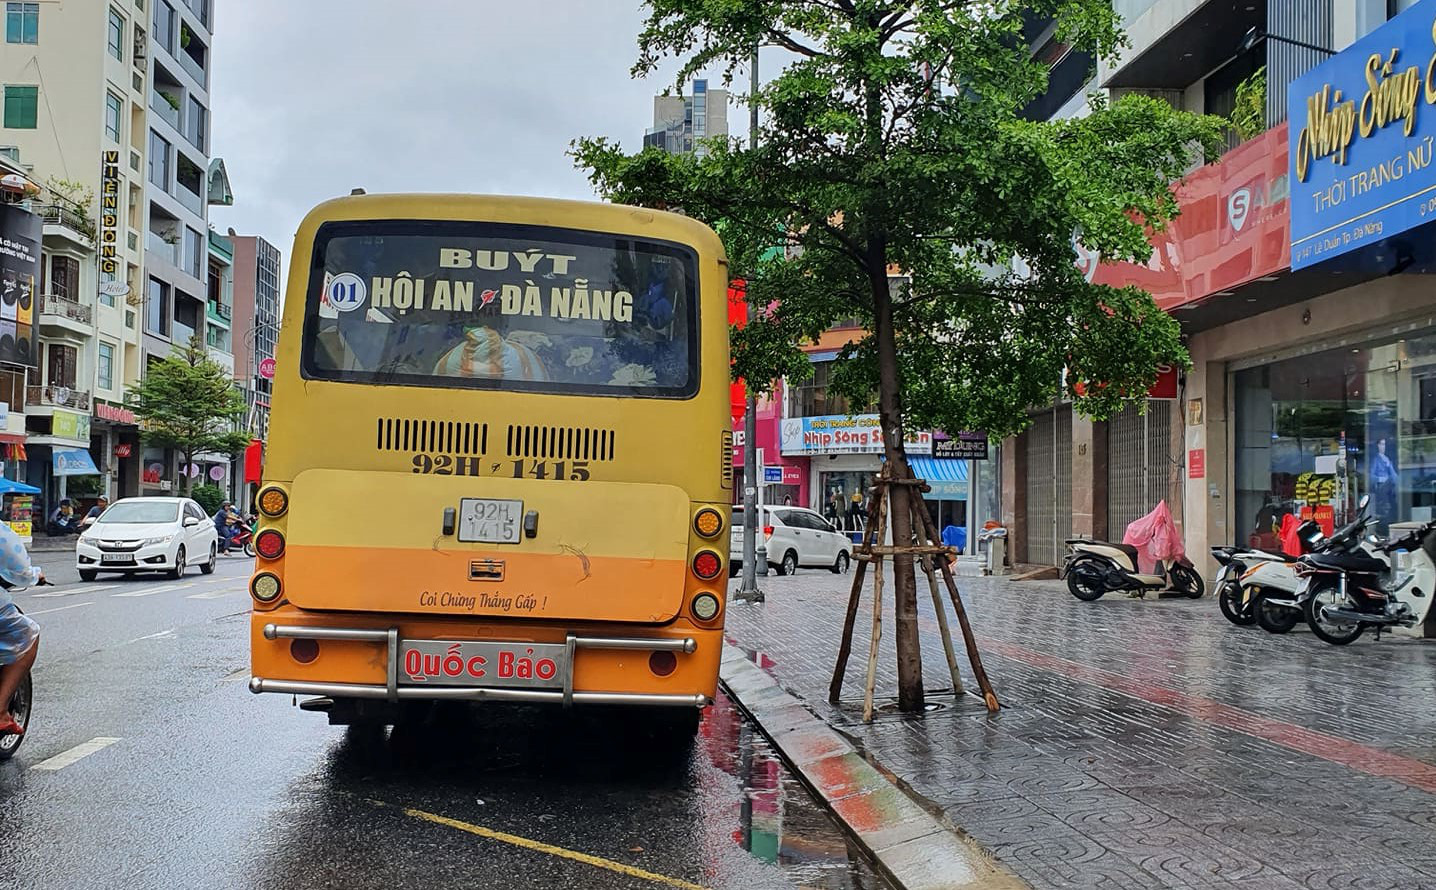 Bất chấp lệnh cấm, xe buýt liên tỉnh vẫn vô tư dạo phố Đà Nẵng - Ảnh 2.